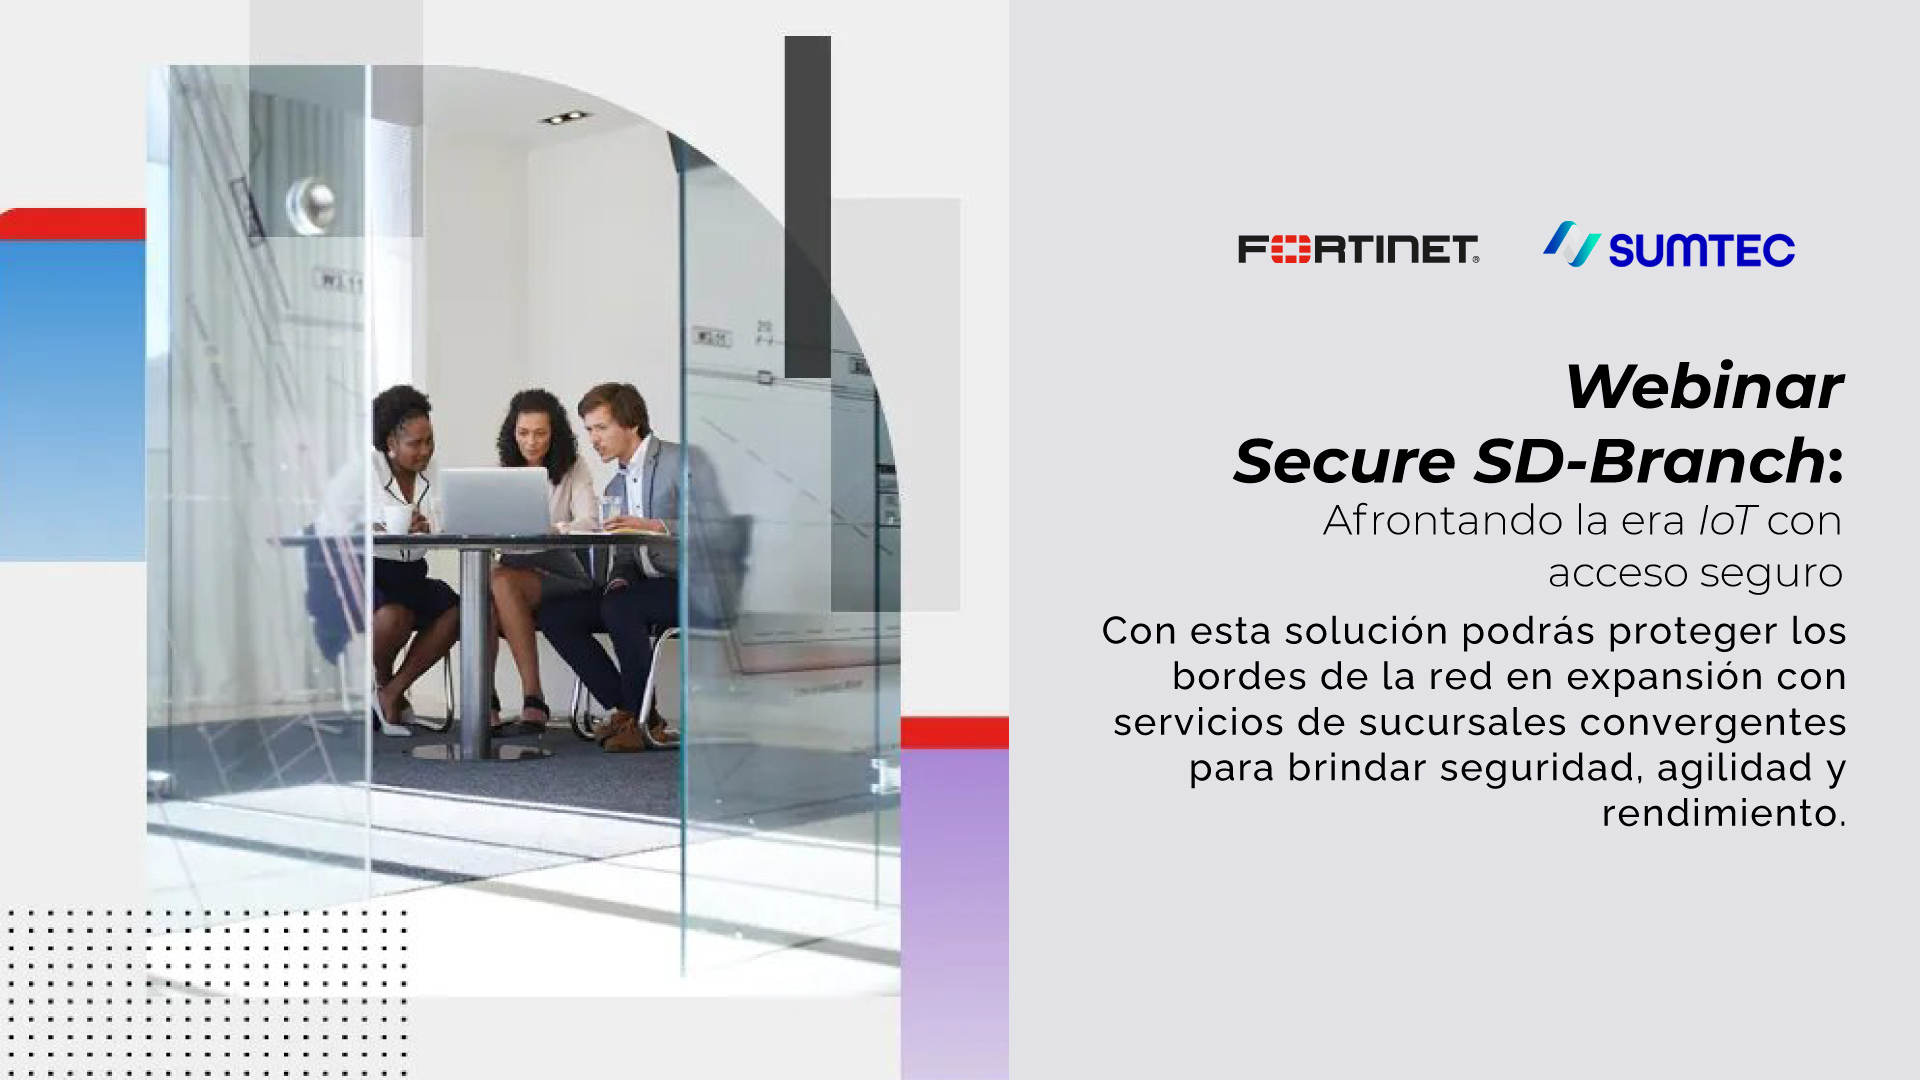 Sumtec Perú y Fortinet organizaron el Webinar: “Secure SD-Branch” para capacitar a sus canales de negocios